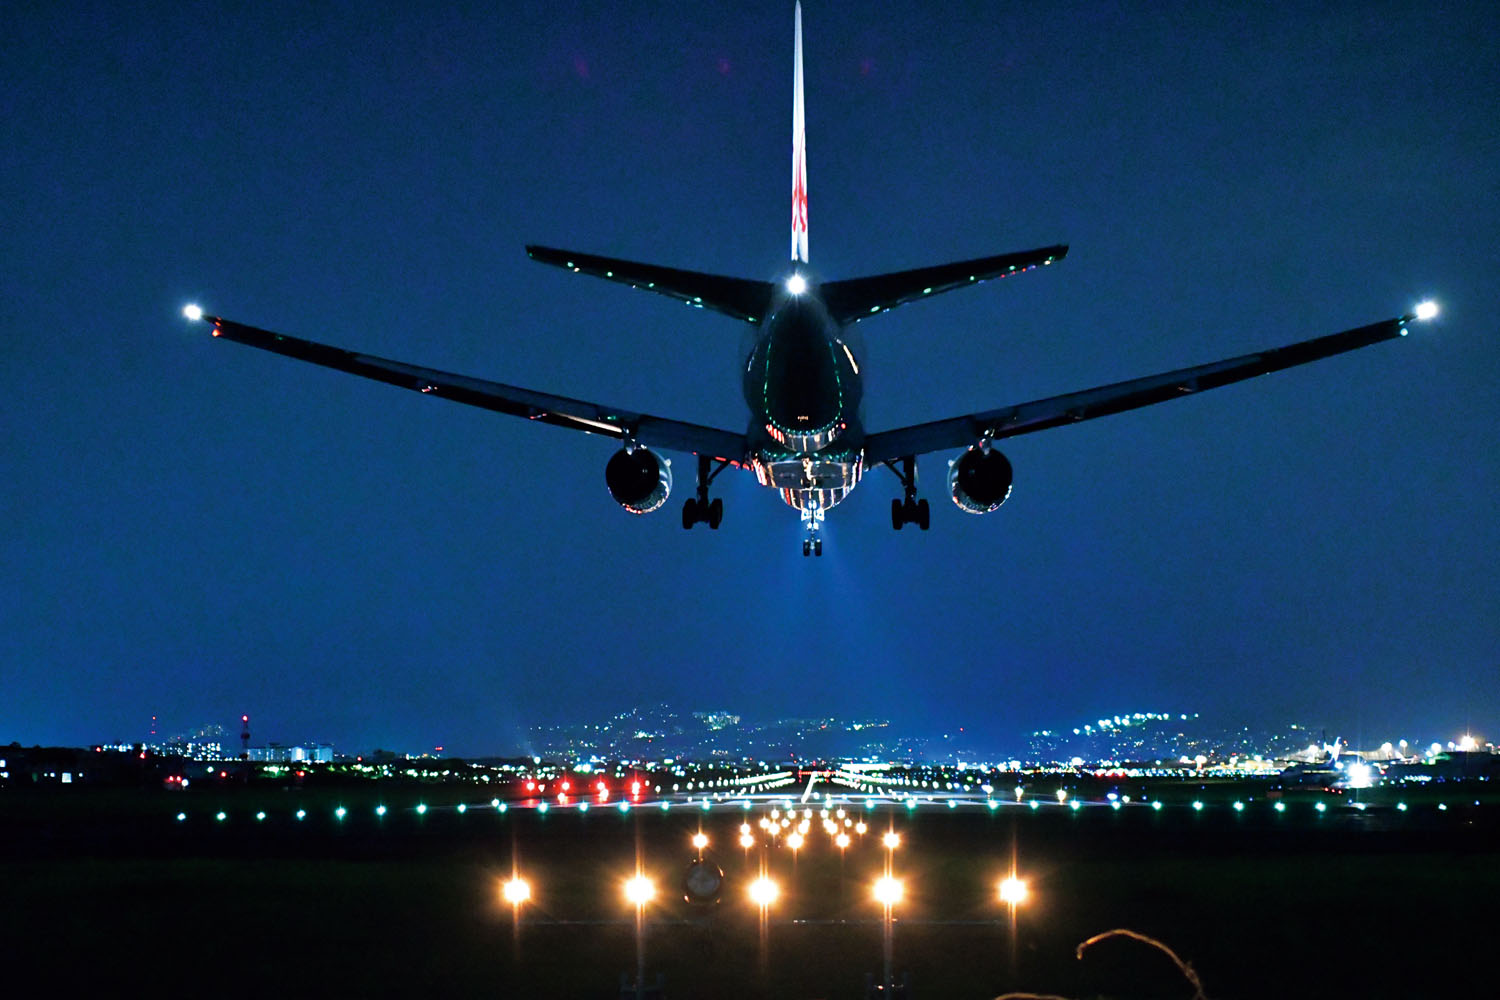 飛行機夜景 は難しくない 撮影時に押さえておくべきいくつかのポイント 飛行機写真の教科書 第7回 Pictures